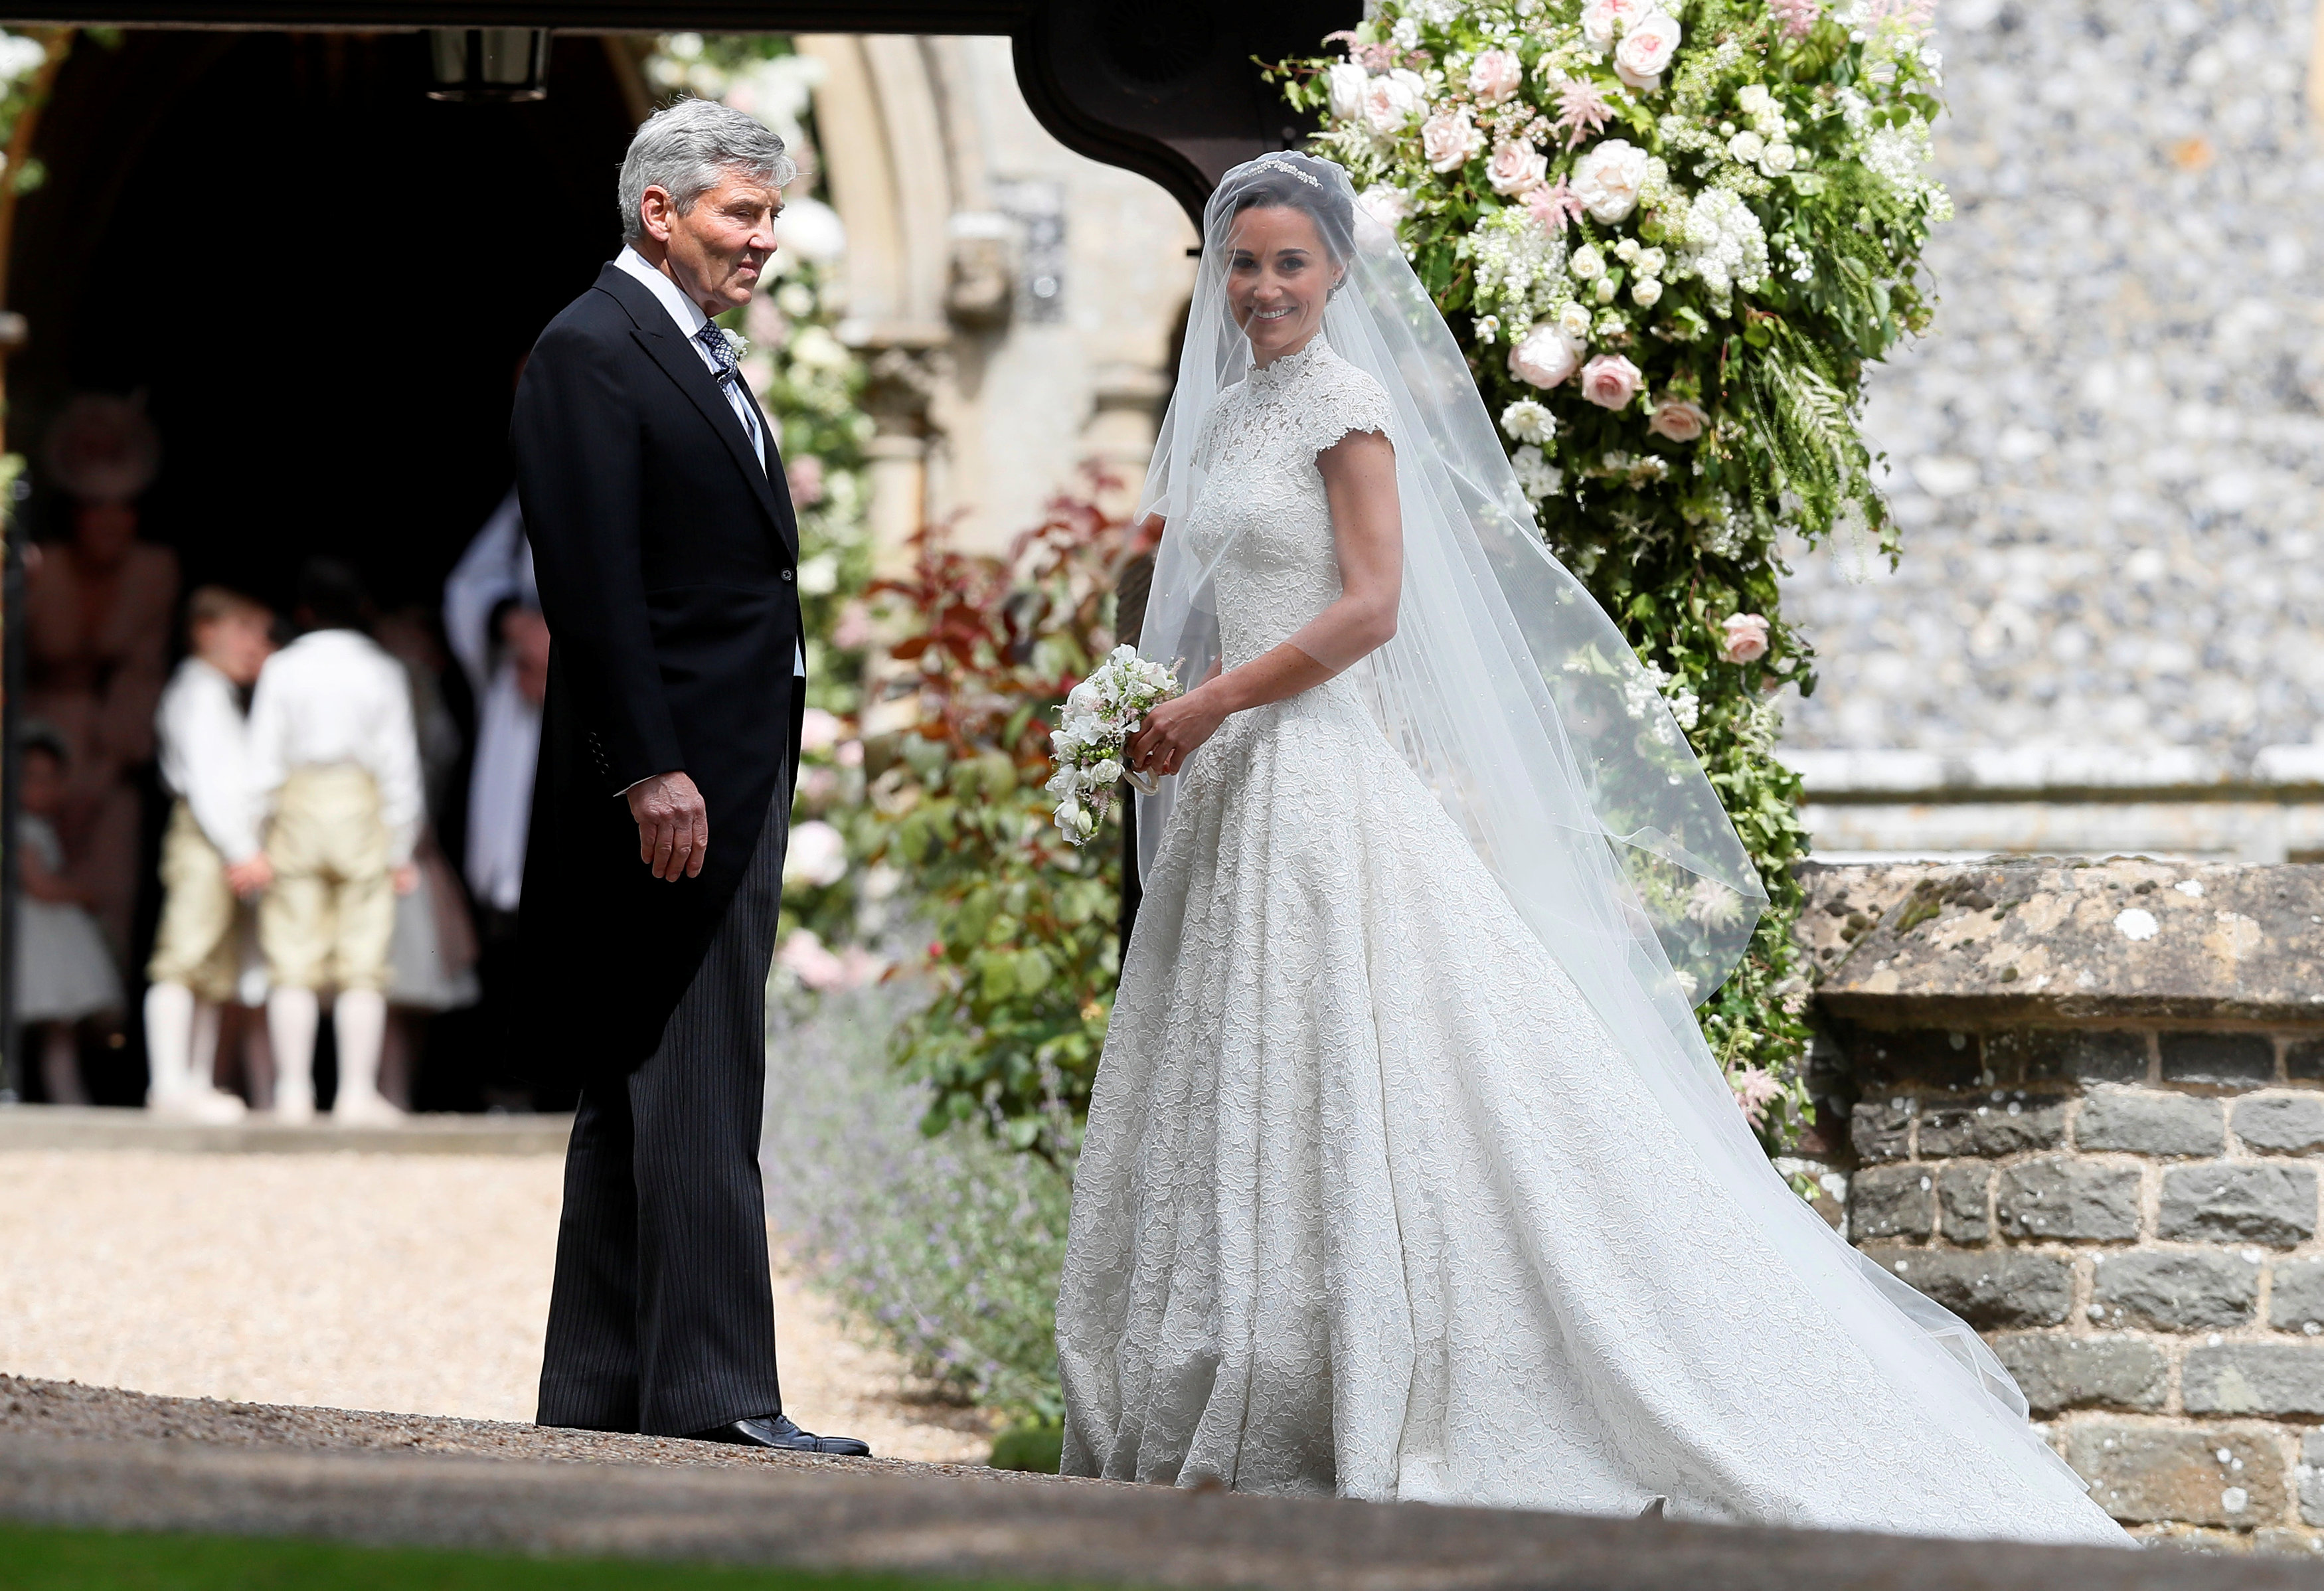 العروس تصل مع والدها مايكل ميدلتون إلى حفل زفافها بالكنيسة